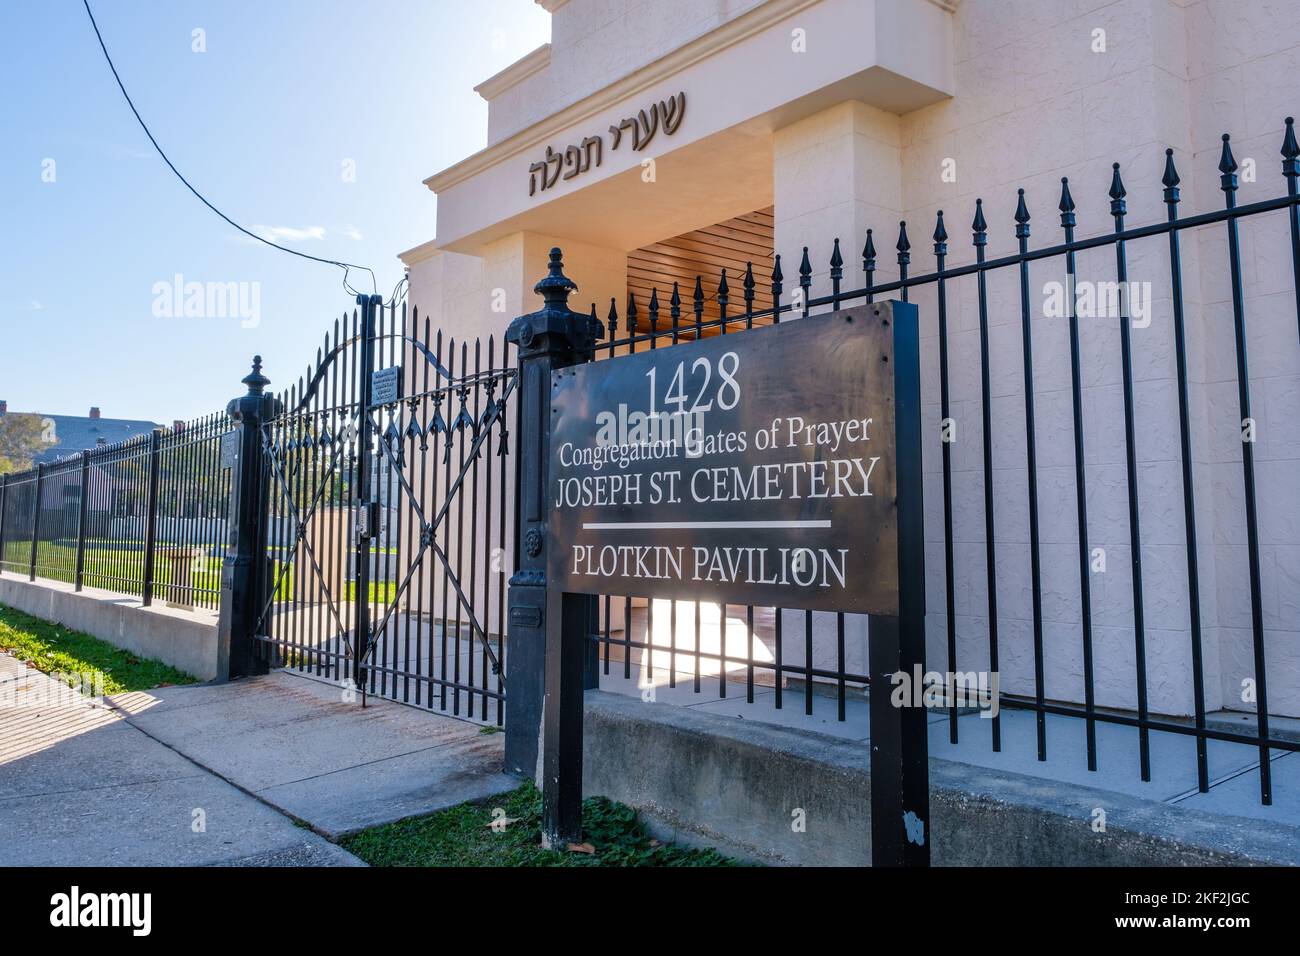 NEW ORLEANS, LA, USA - 10 NOVEMBRE 2022: Porta d'ingresso e cartello della Congregazione Porte di preghiera Joseph Street Cemetery Plotkin Pavilion in Uptown Foto Stock